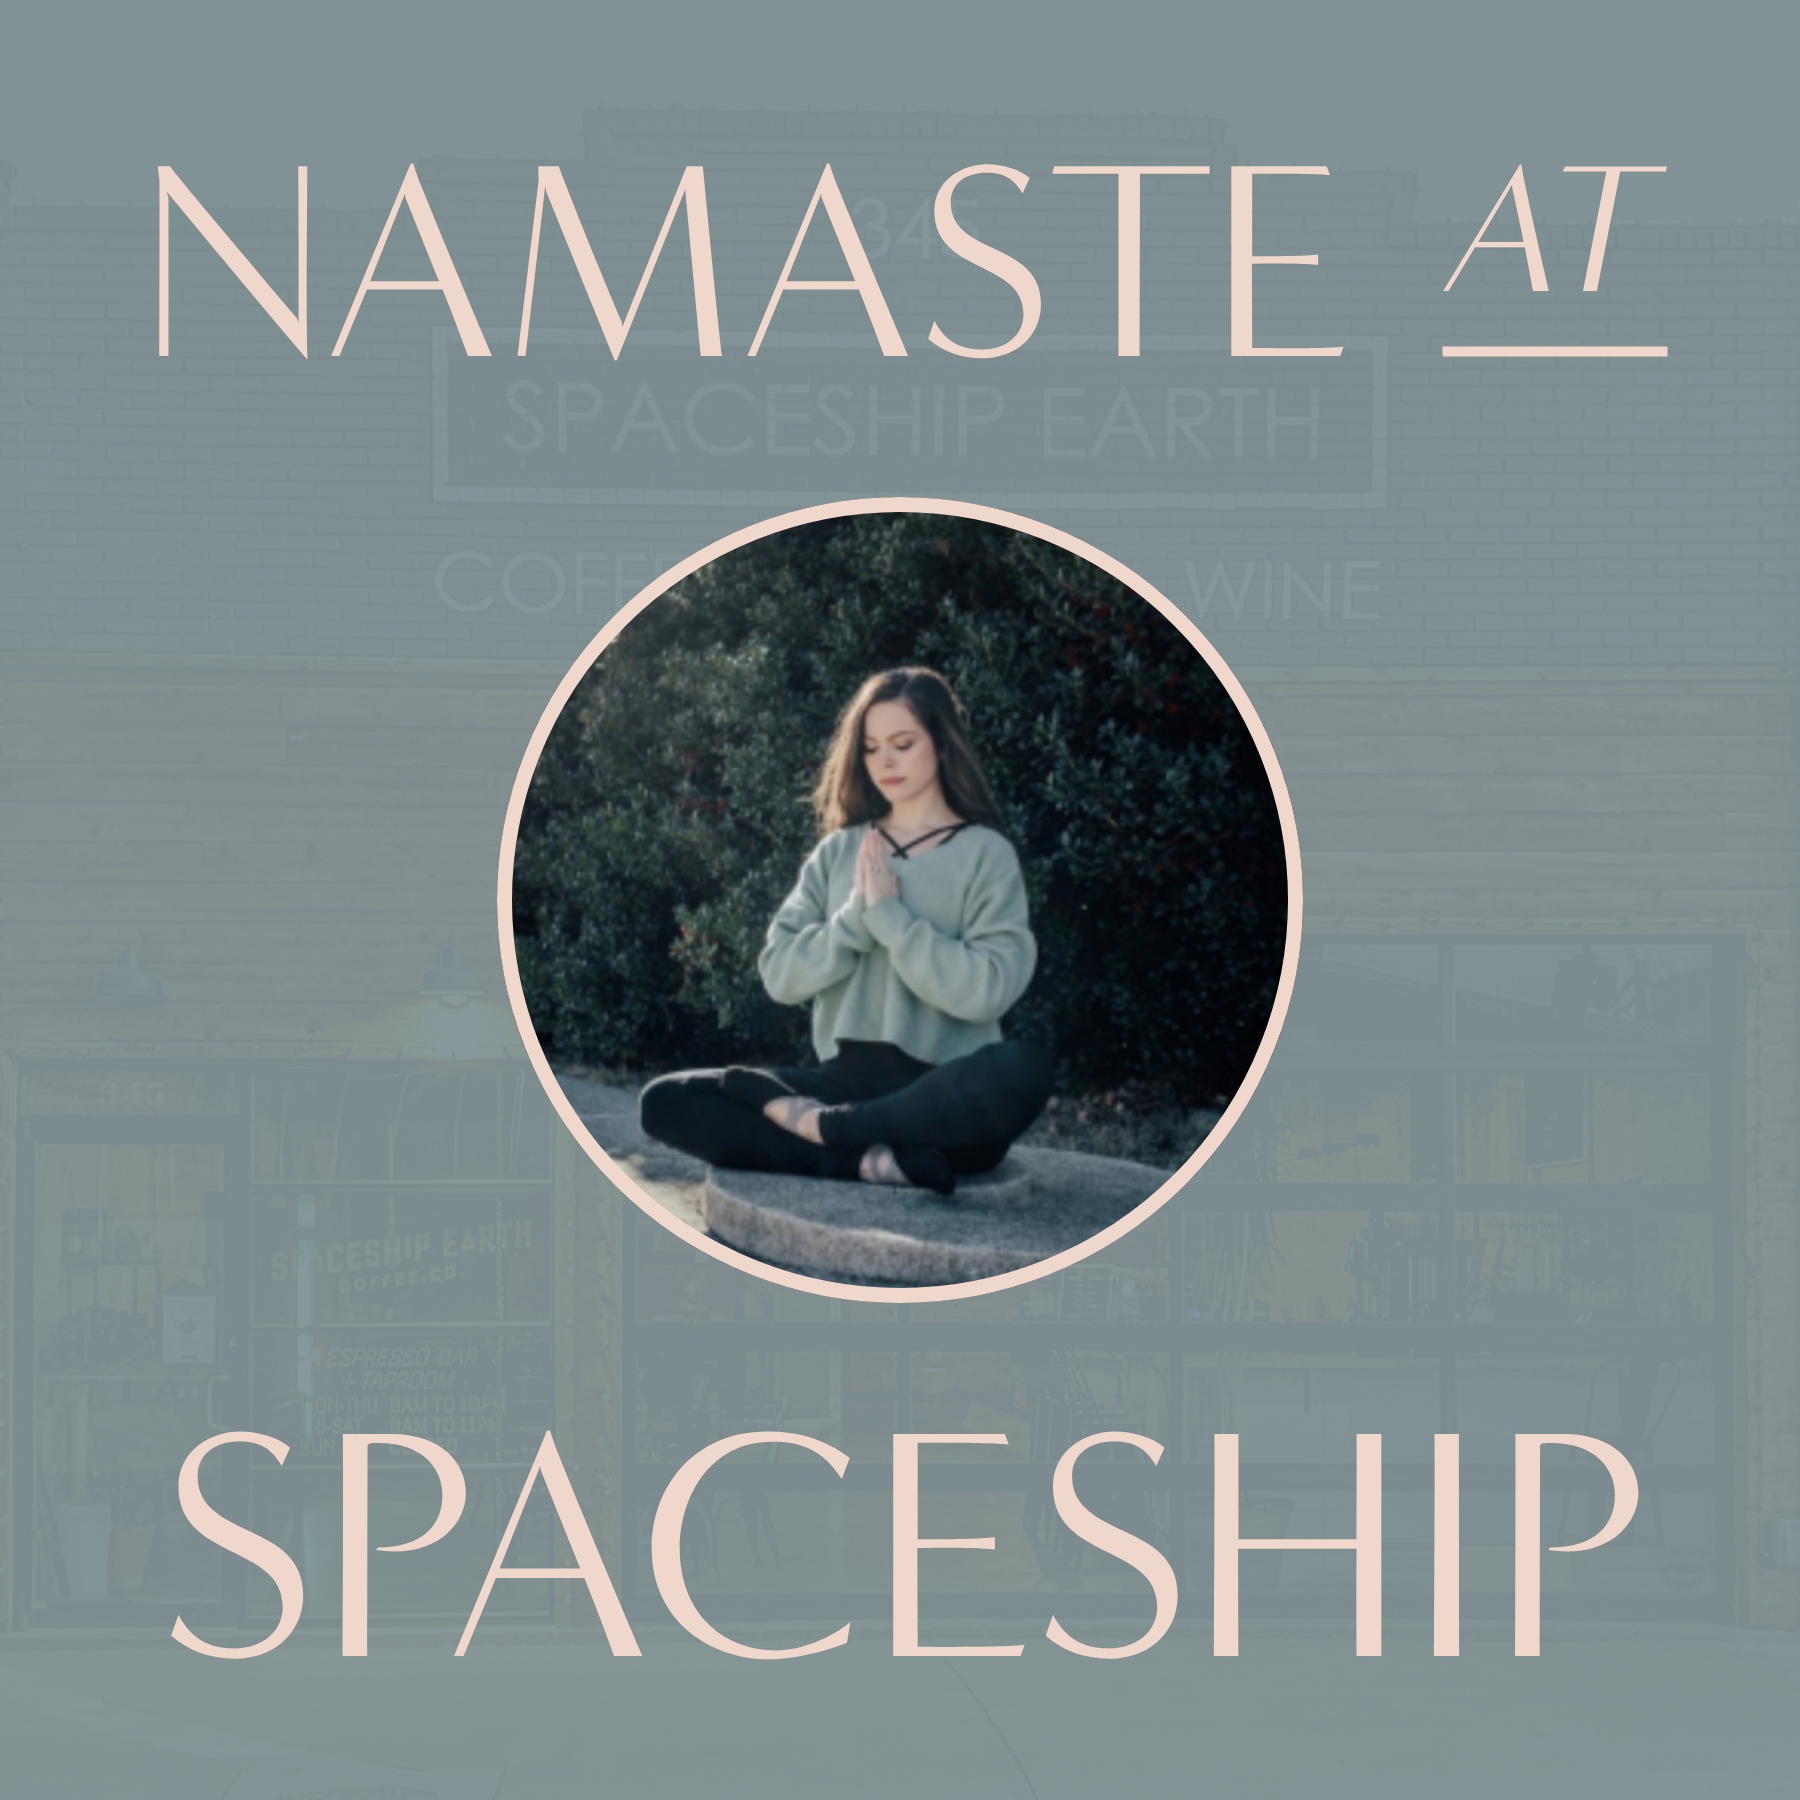 Namaste at Spaceship